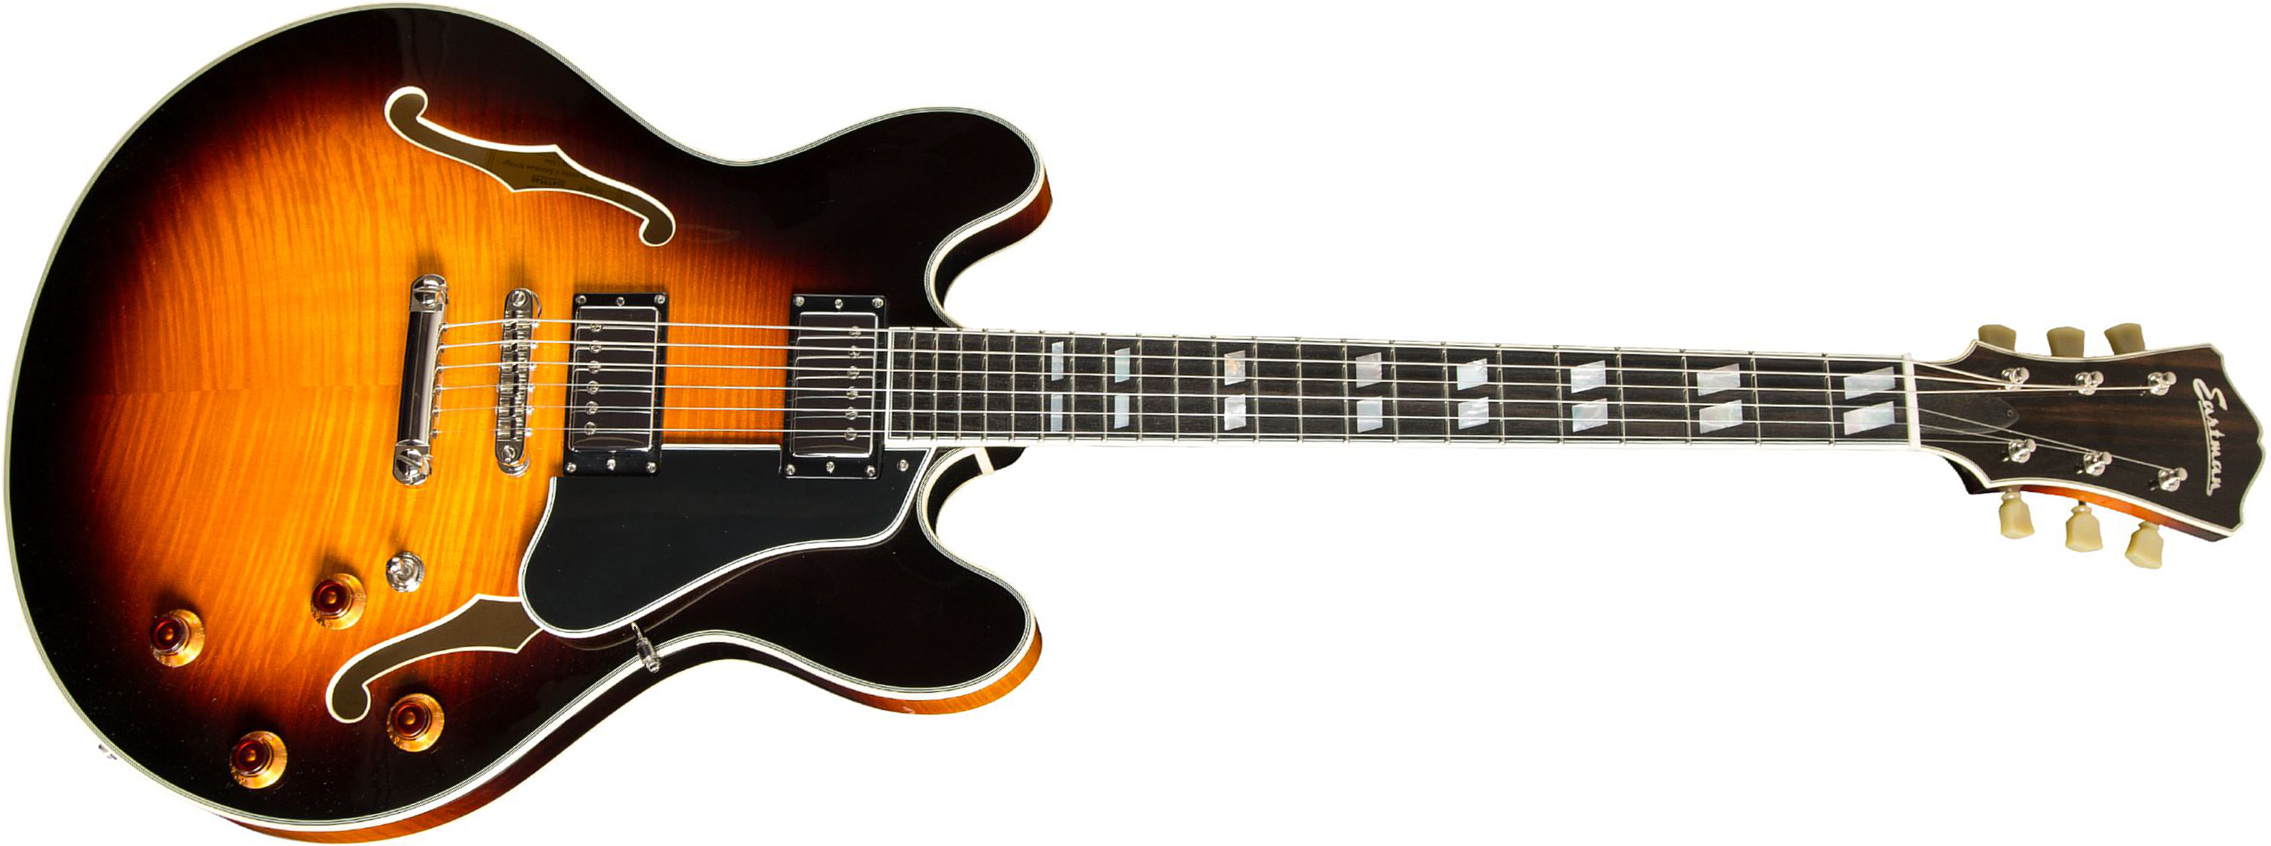 Eastman T486 Thinline Laminate Tout Erable Hh Seymour Duncan Ht Eb - Sunburst - Semi hollow elektriche gitaar - Main picture